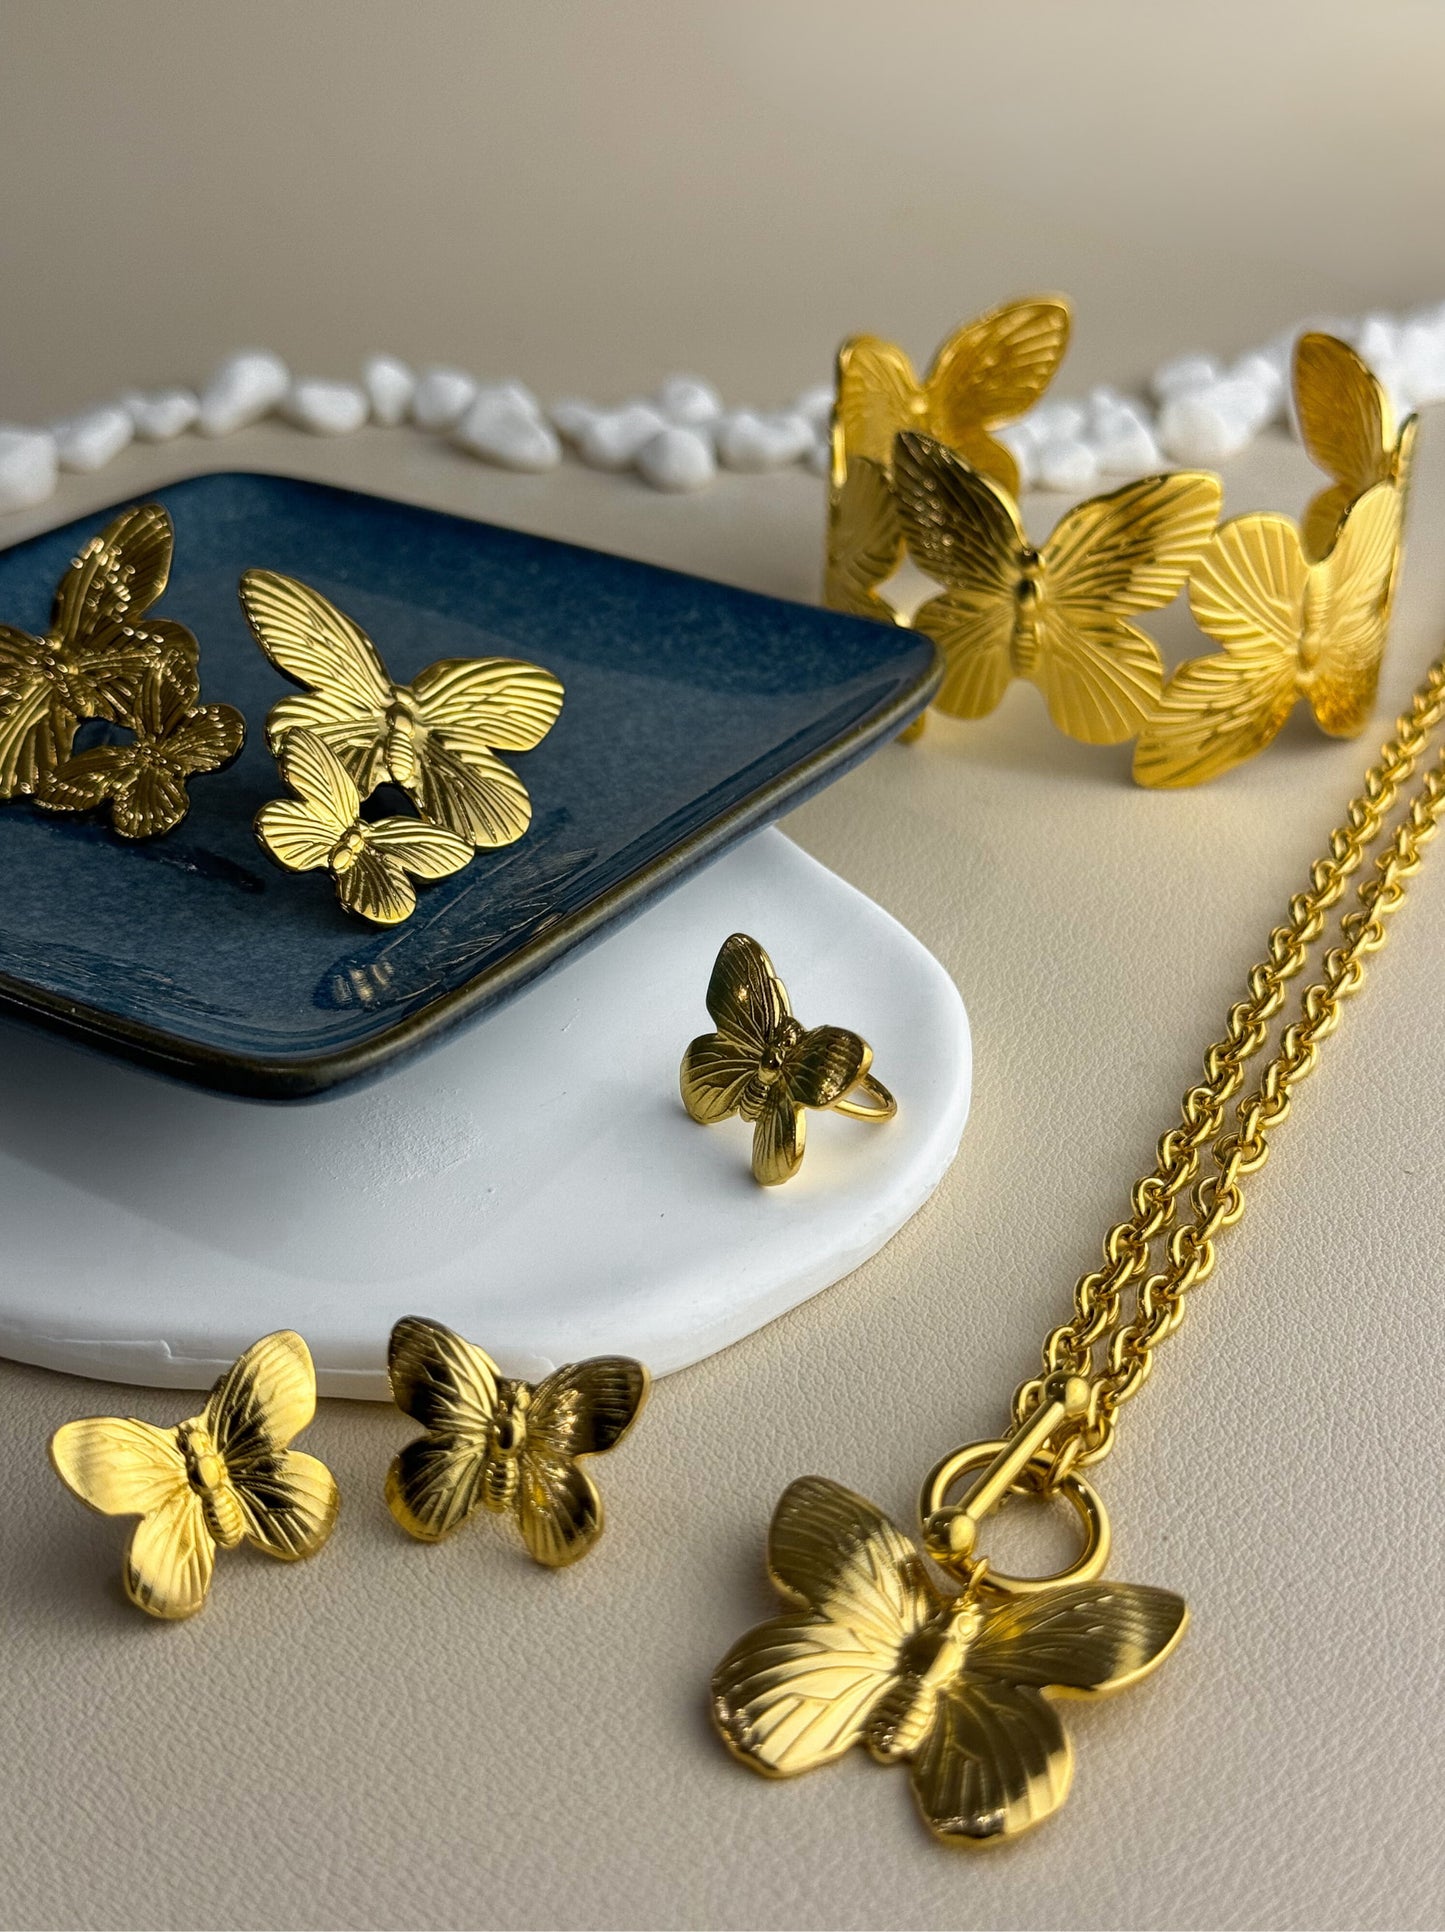 Butterfly gold steel earrings